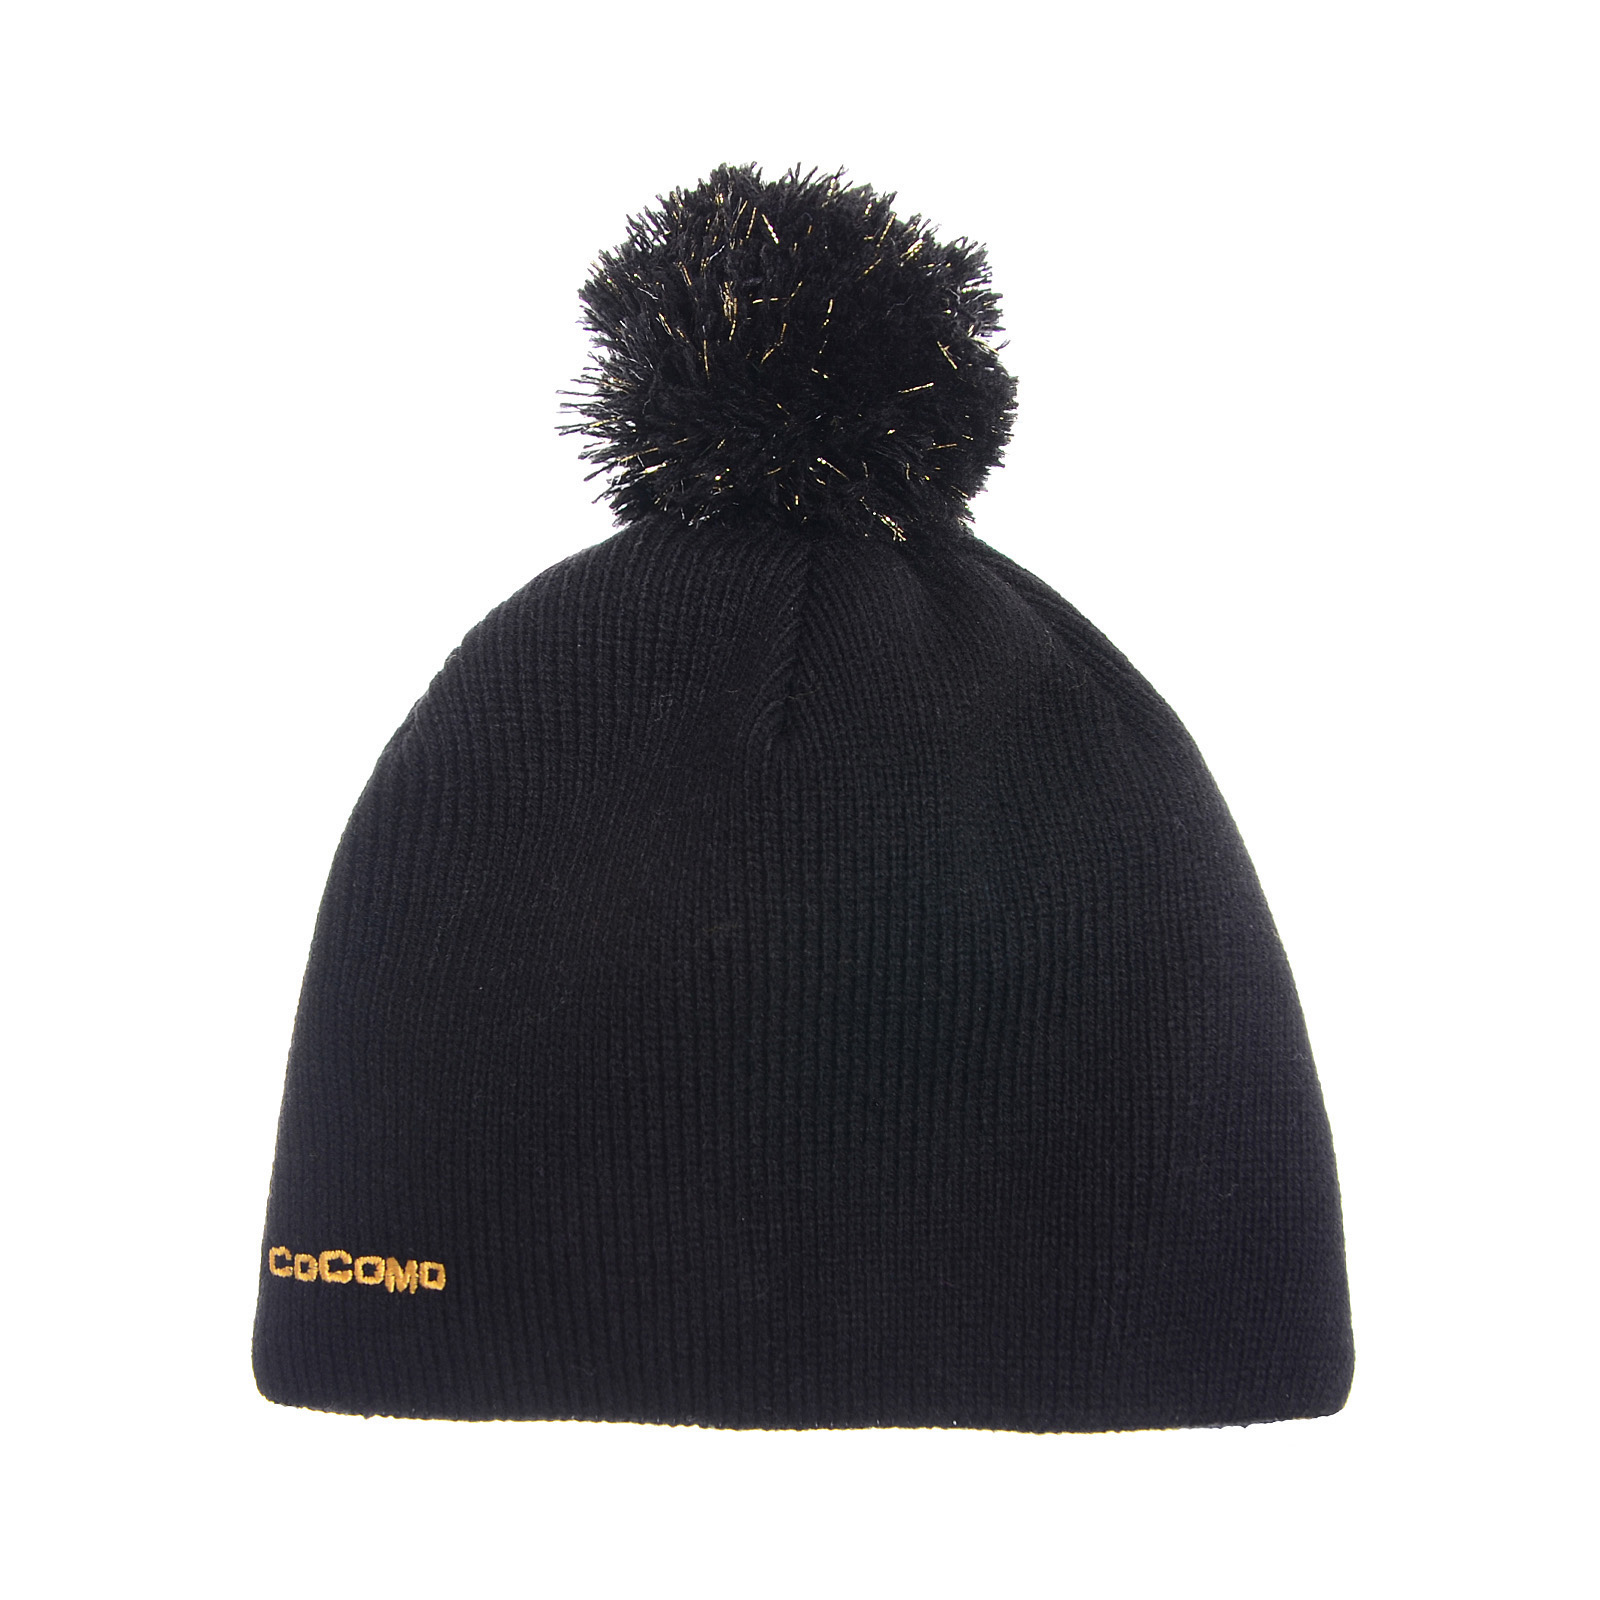 Cocomo CAP 